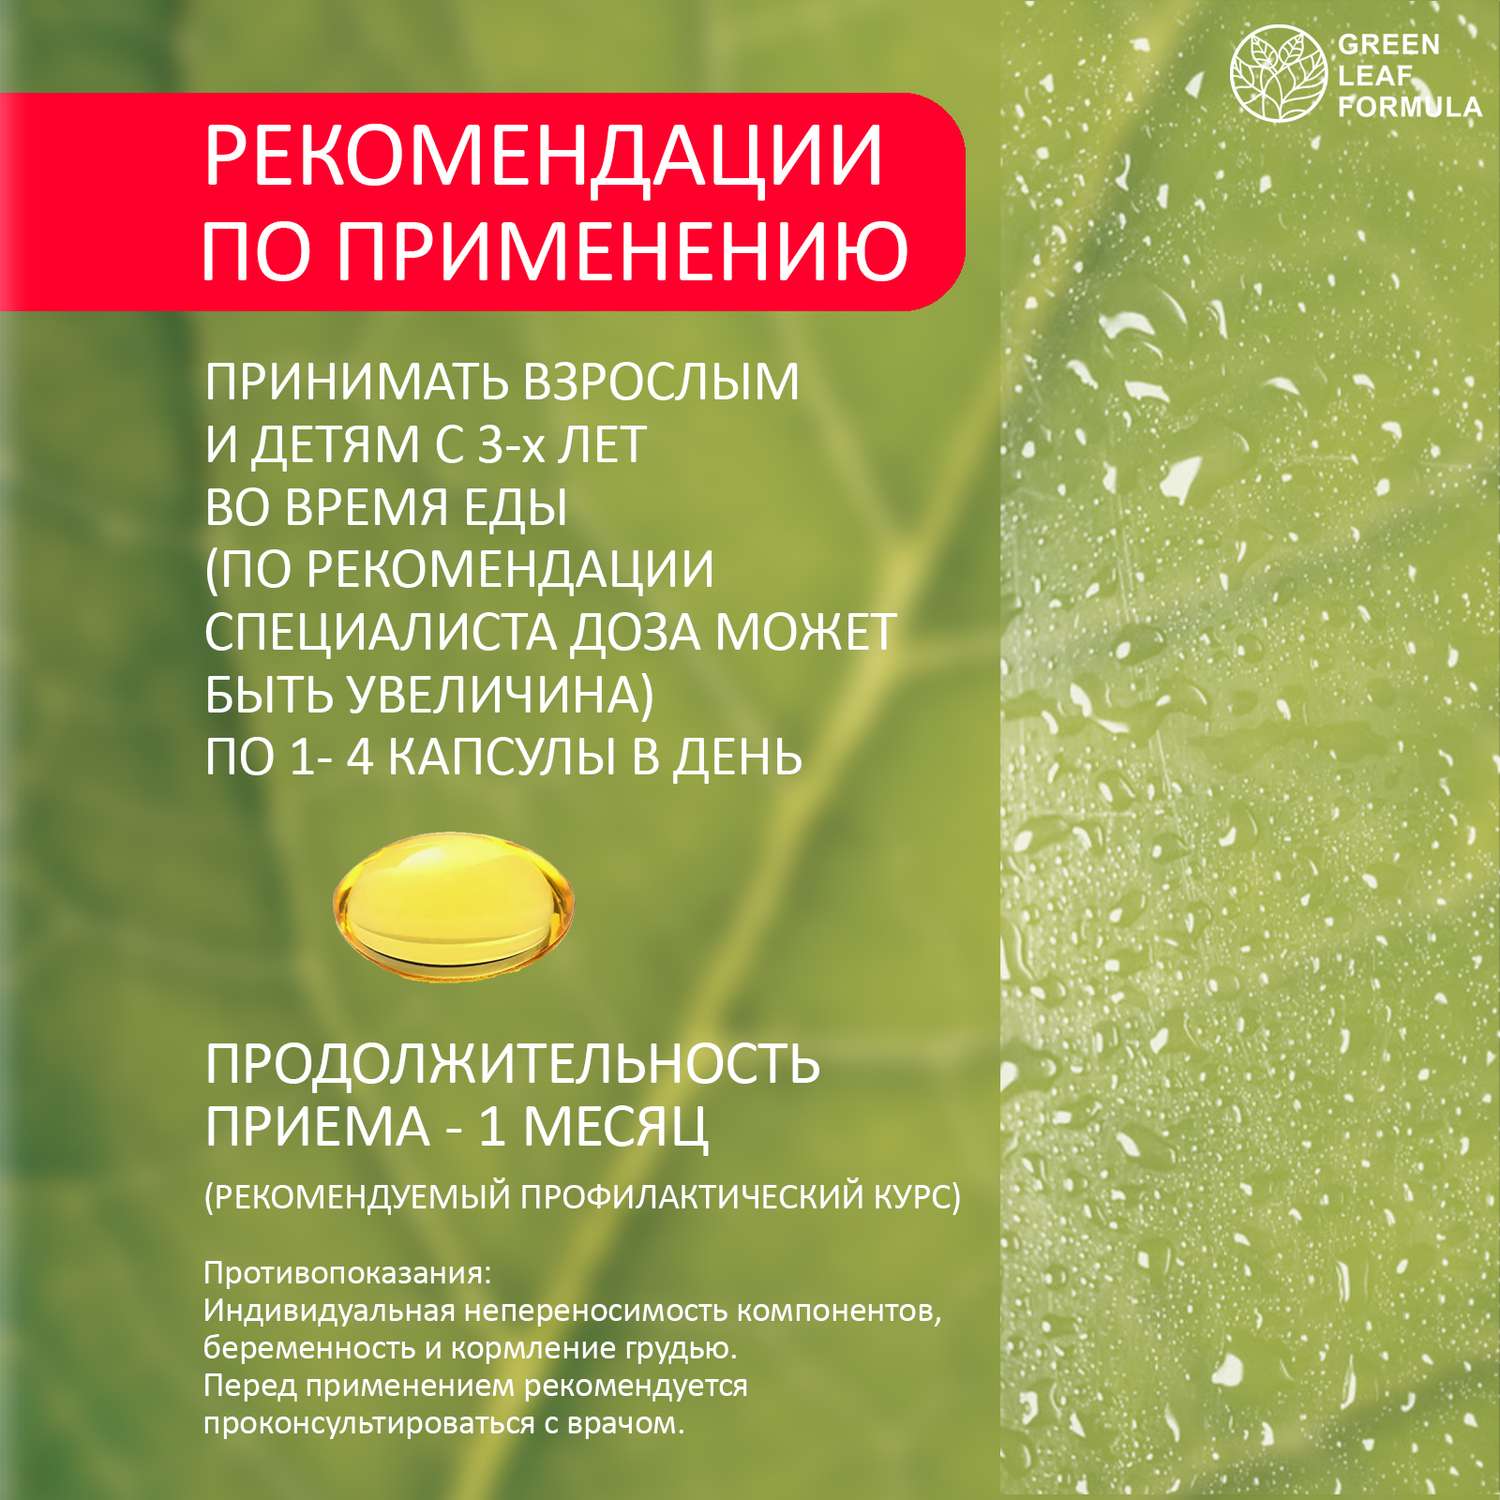 ОМЕГА 3 витамины для детей Green Leaf Formula рыбий жир в капсулах для женщин и мужчин 3 банки - фото 8